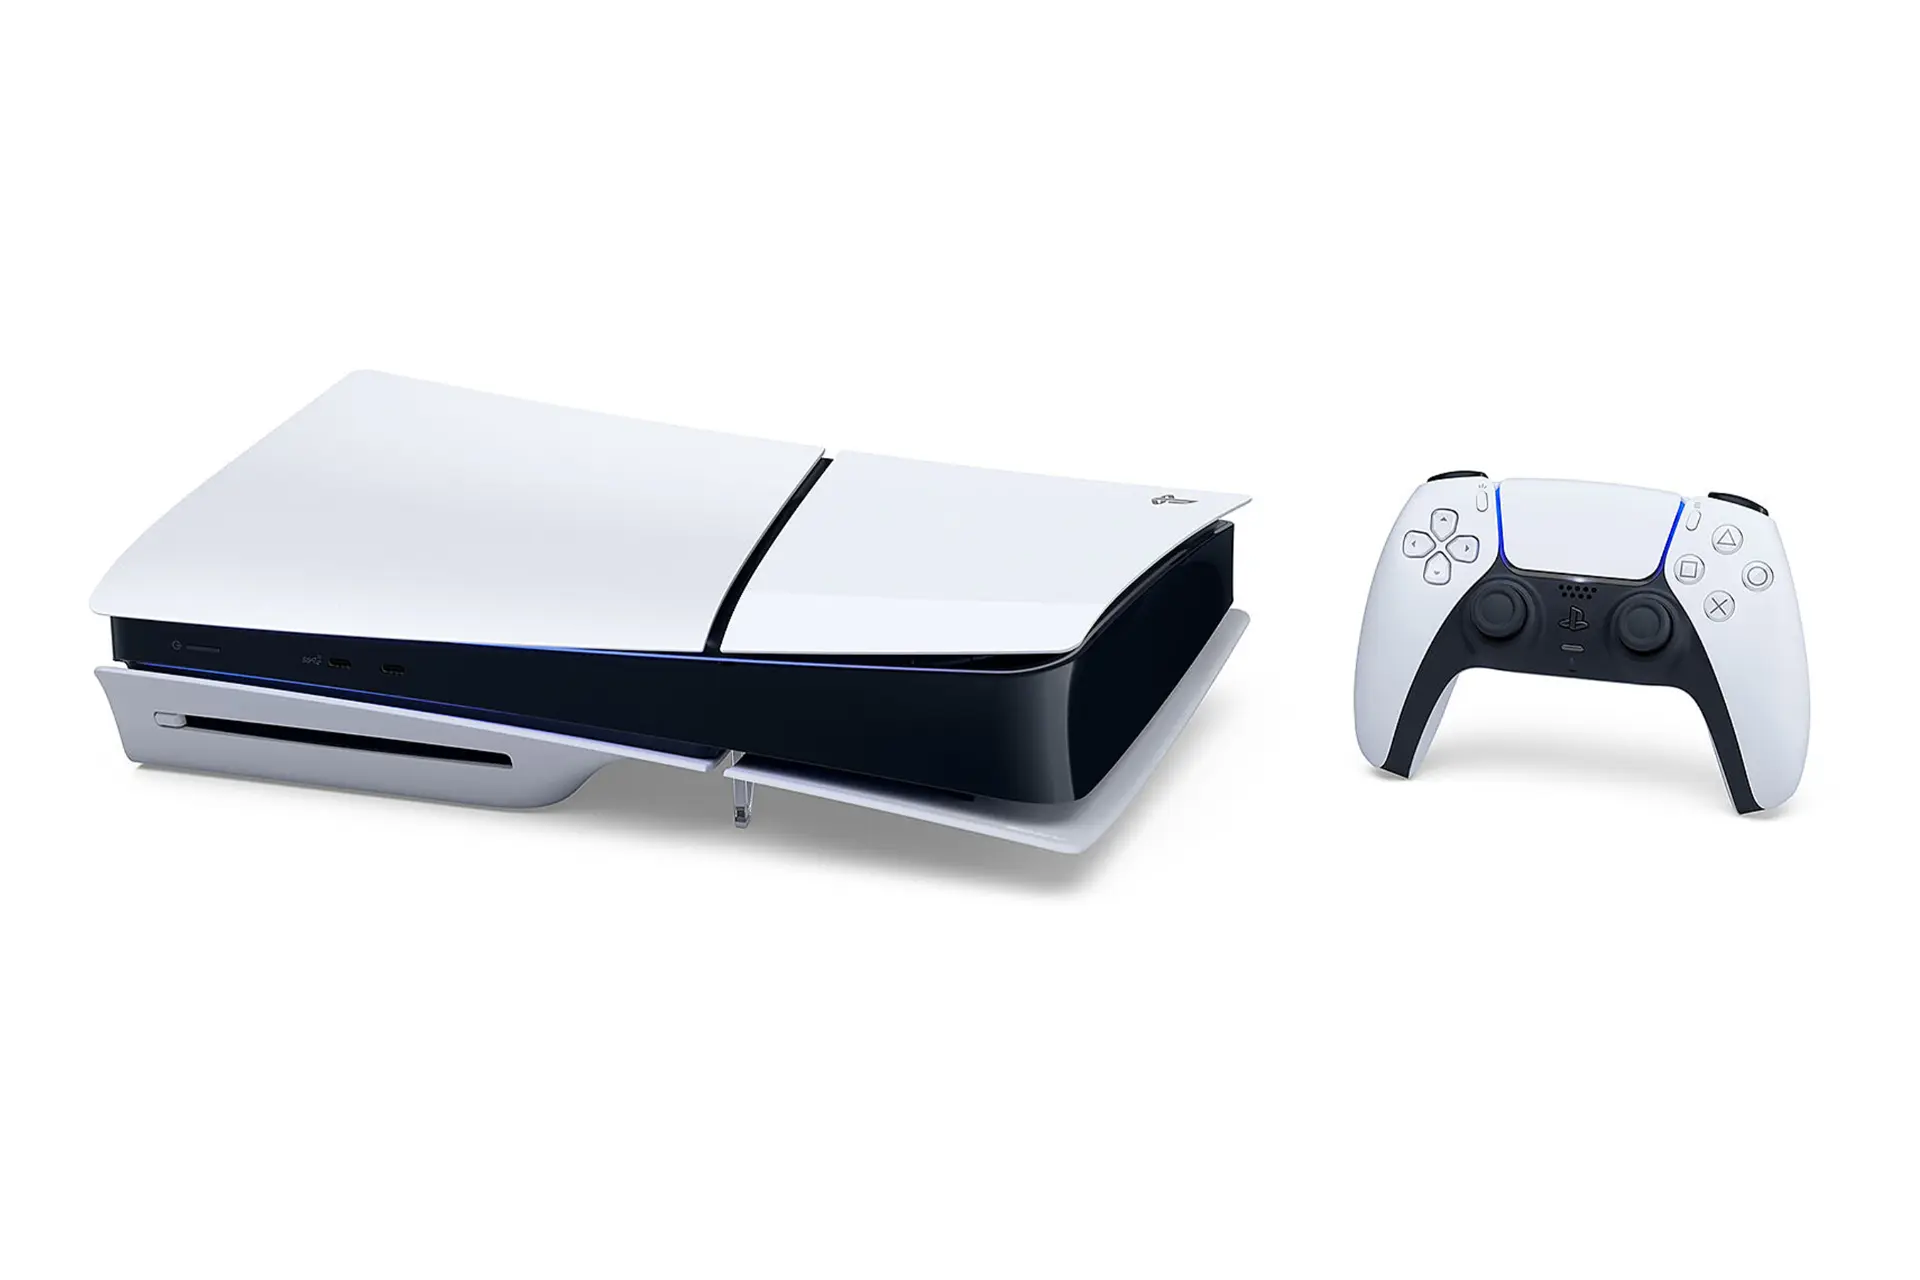 نمای افقی کنسول بازی پلی استیشن 5 اسلیم سونی / Sony PlayStation 5 Slim با نمایش دسته دوال سنس